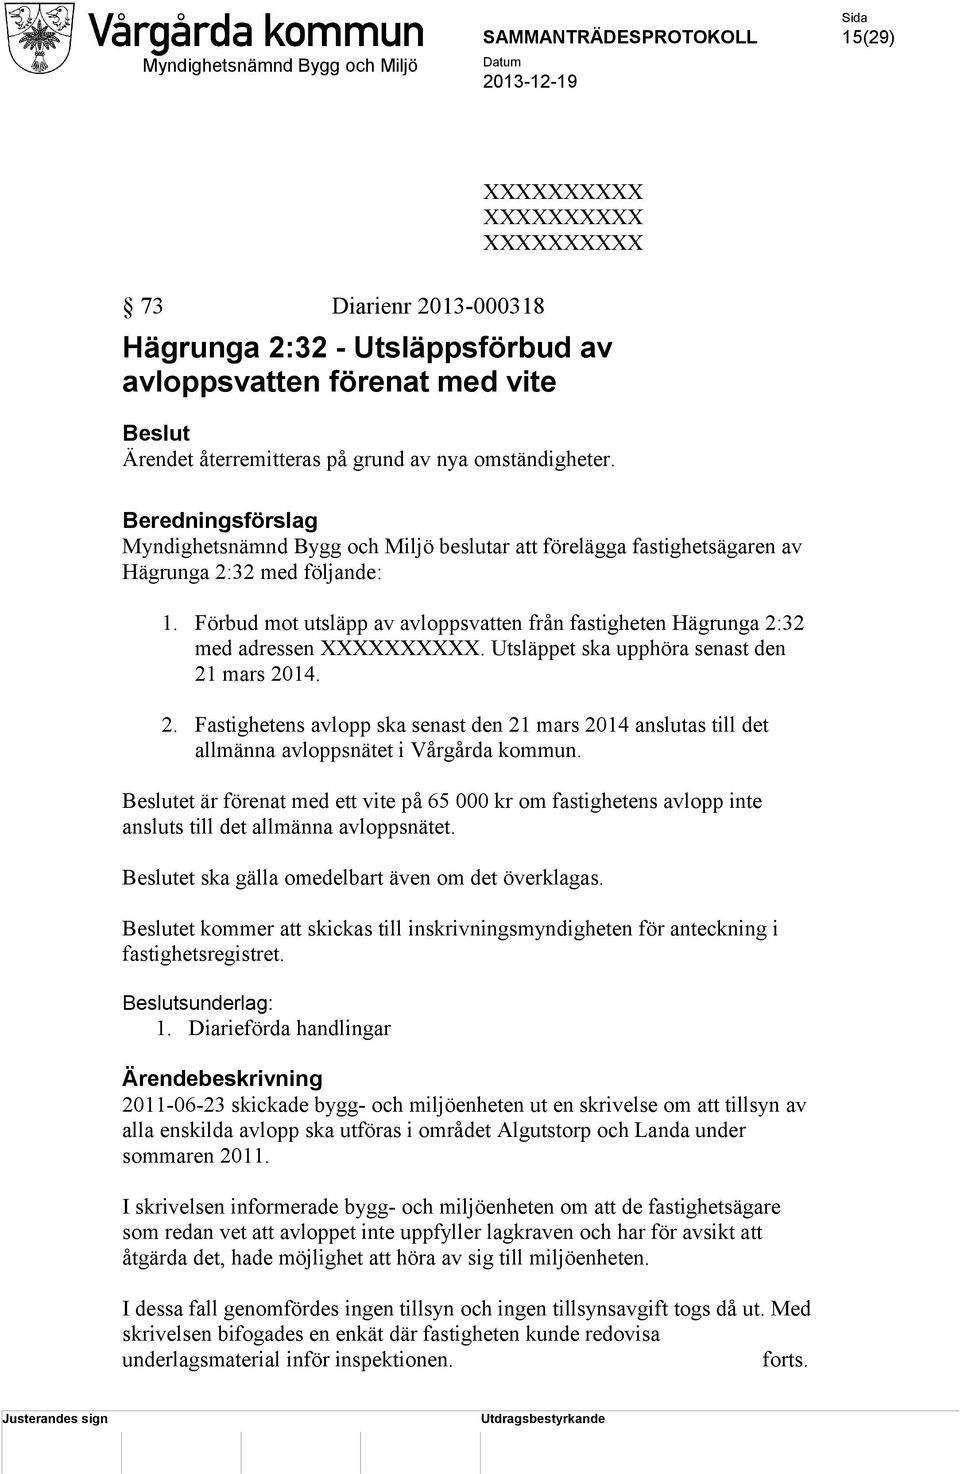 Förbud mot utsläpp av avloppsvatten från fastigheten Hägrunga 2:32 med adressen. Utsläppet ska upphöra senast den 21 mars 2014. 2. Fastighetens avlopp ska senast den 21 mars 2014 anslutas till det allmänna avloppsnätet i Vårgårda kommun.